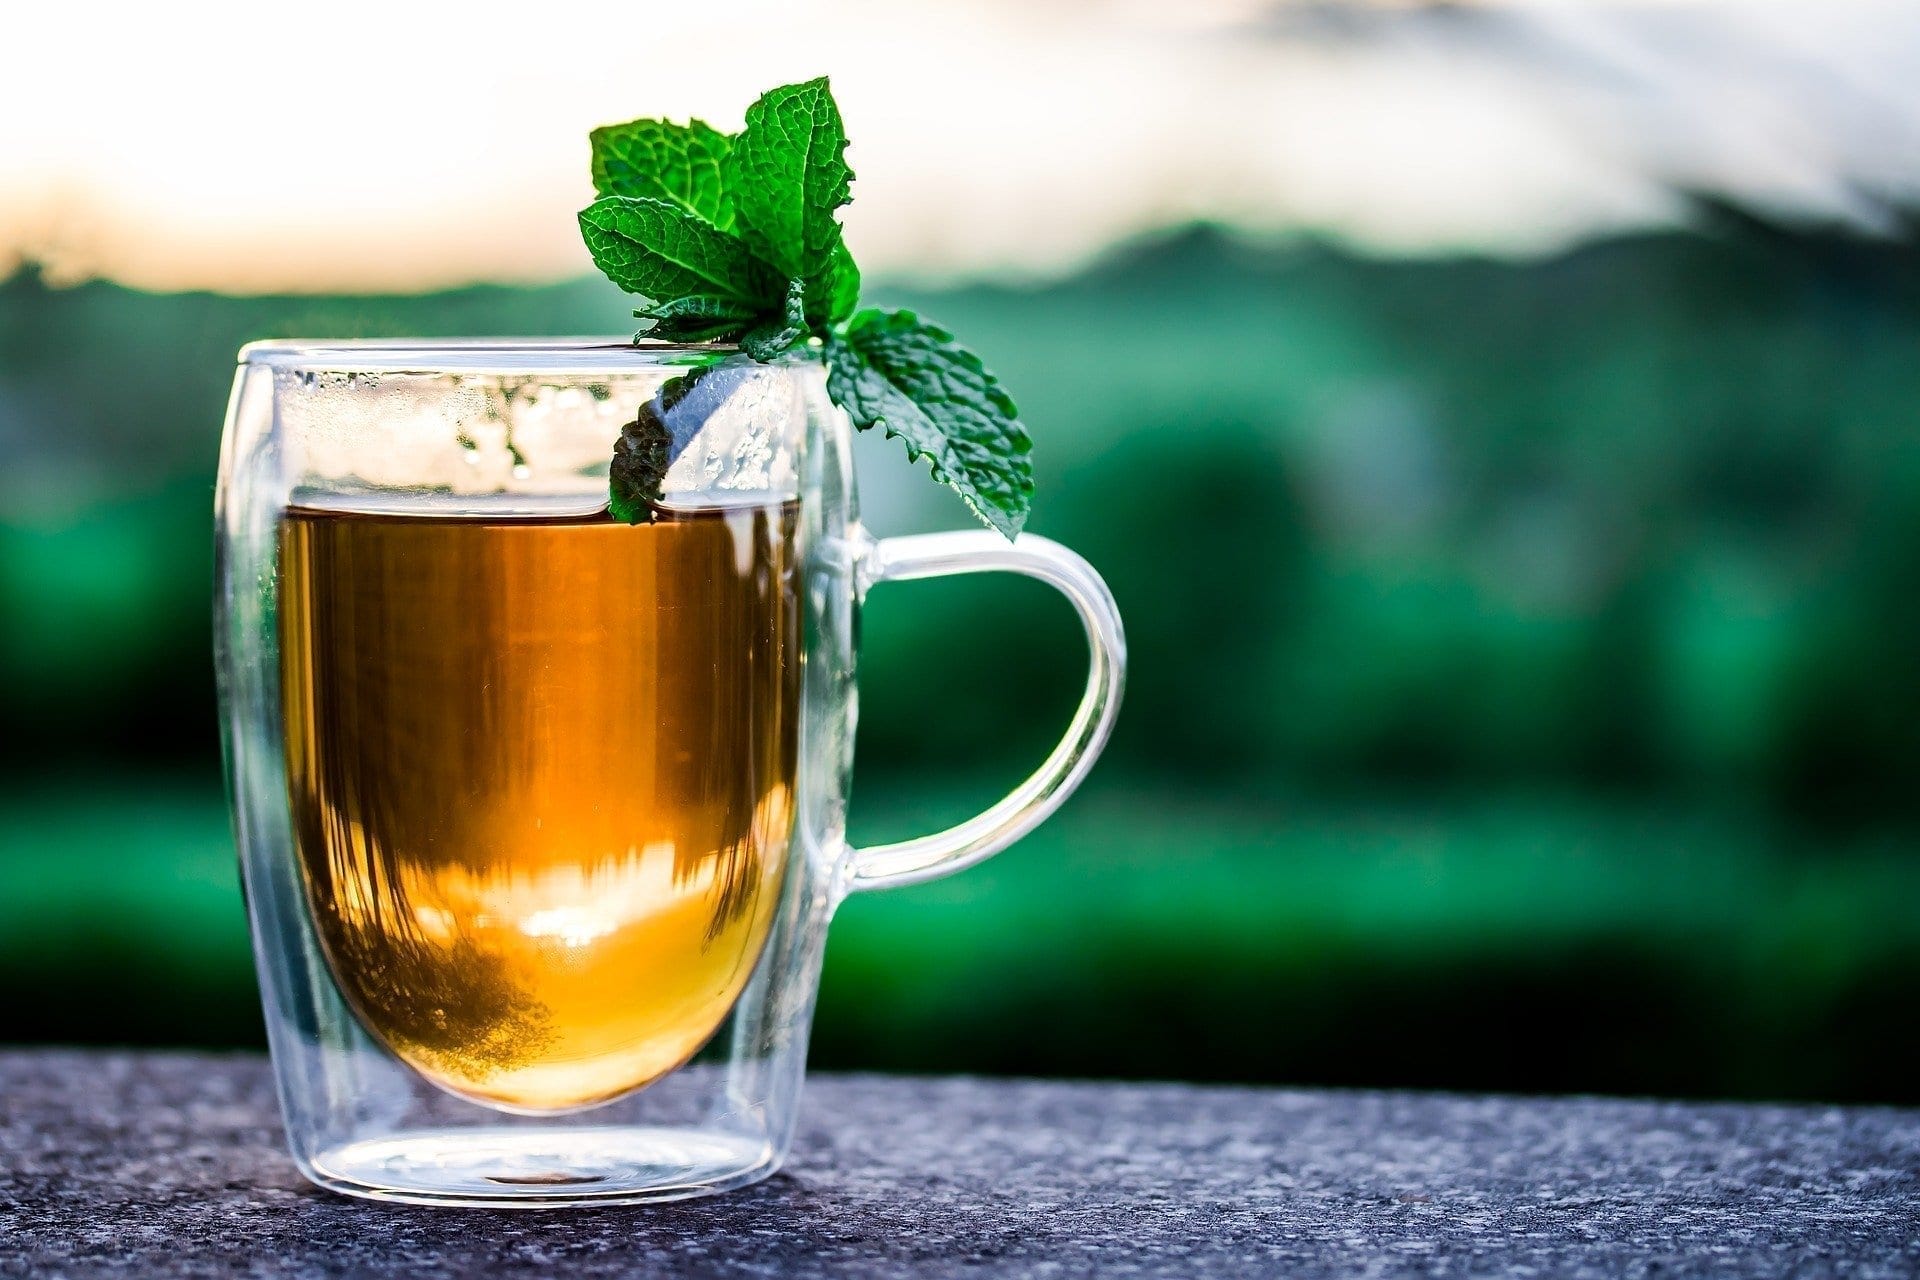 Punto de Té señala la falta de calidad como principal reclamo de los amantes del té en los bares